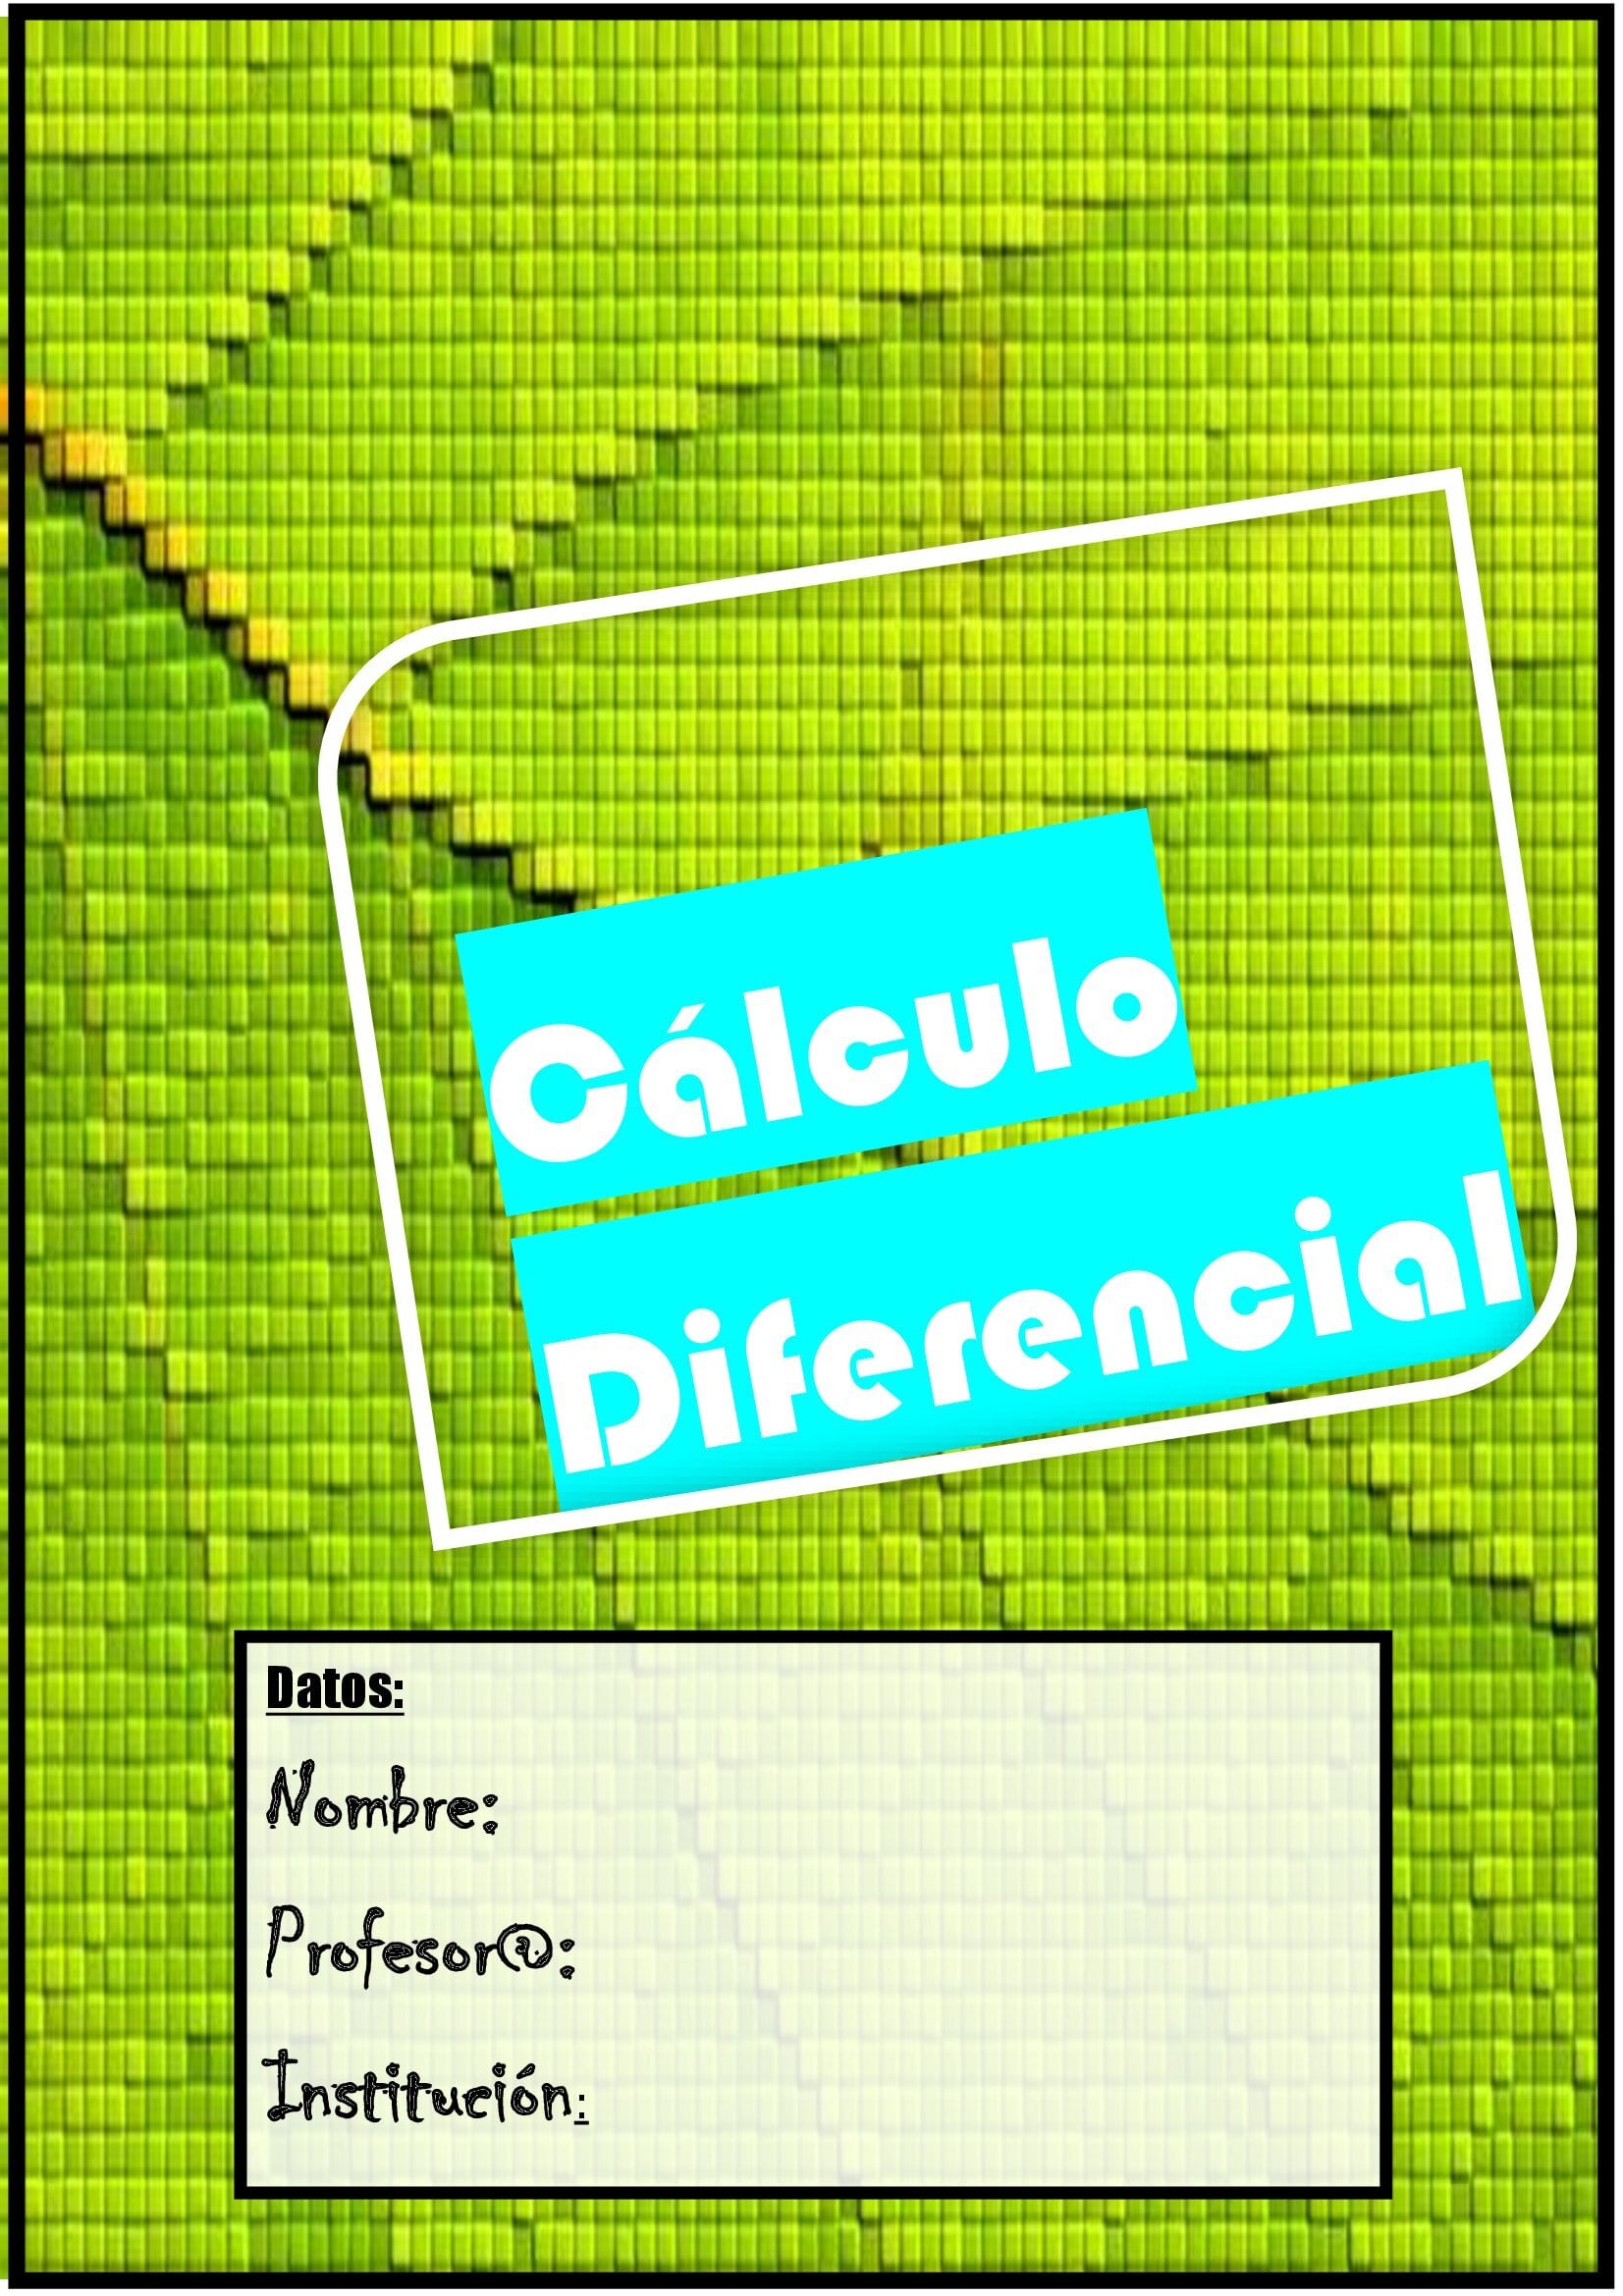 Portada diferencial - calculo